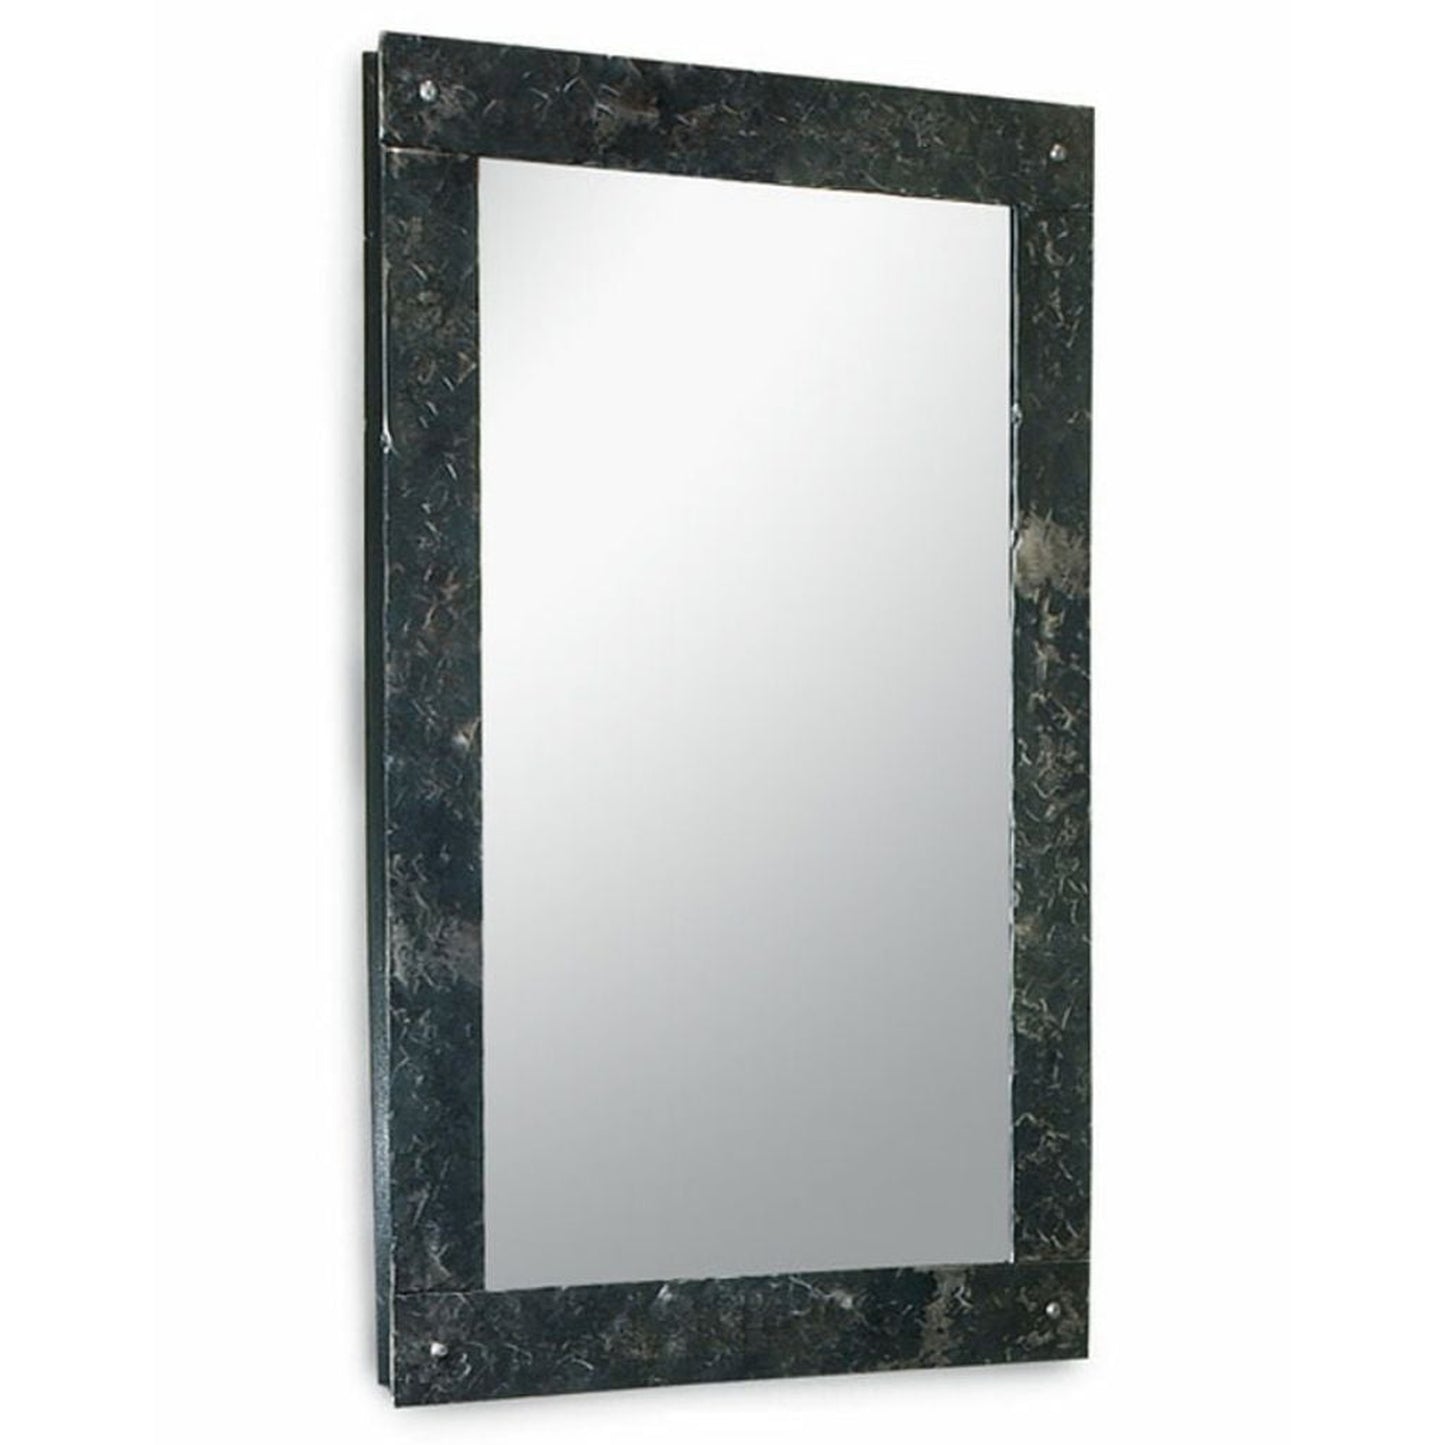 Stone County Ironworks Studio Series 23" x 29" Natural Iron Finish Rectangular Mirror